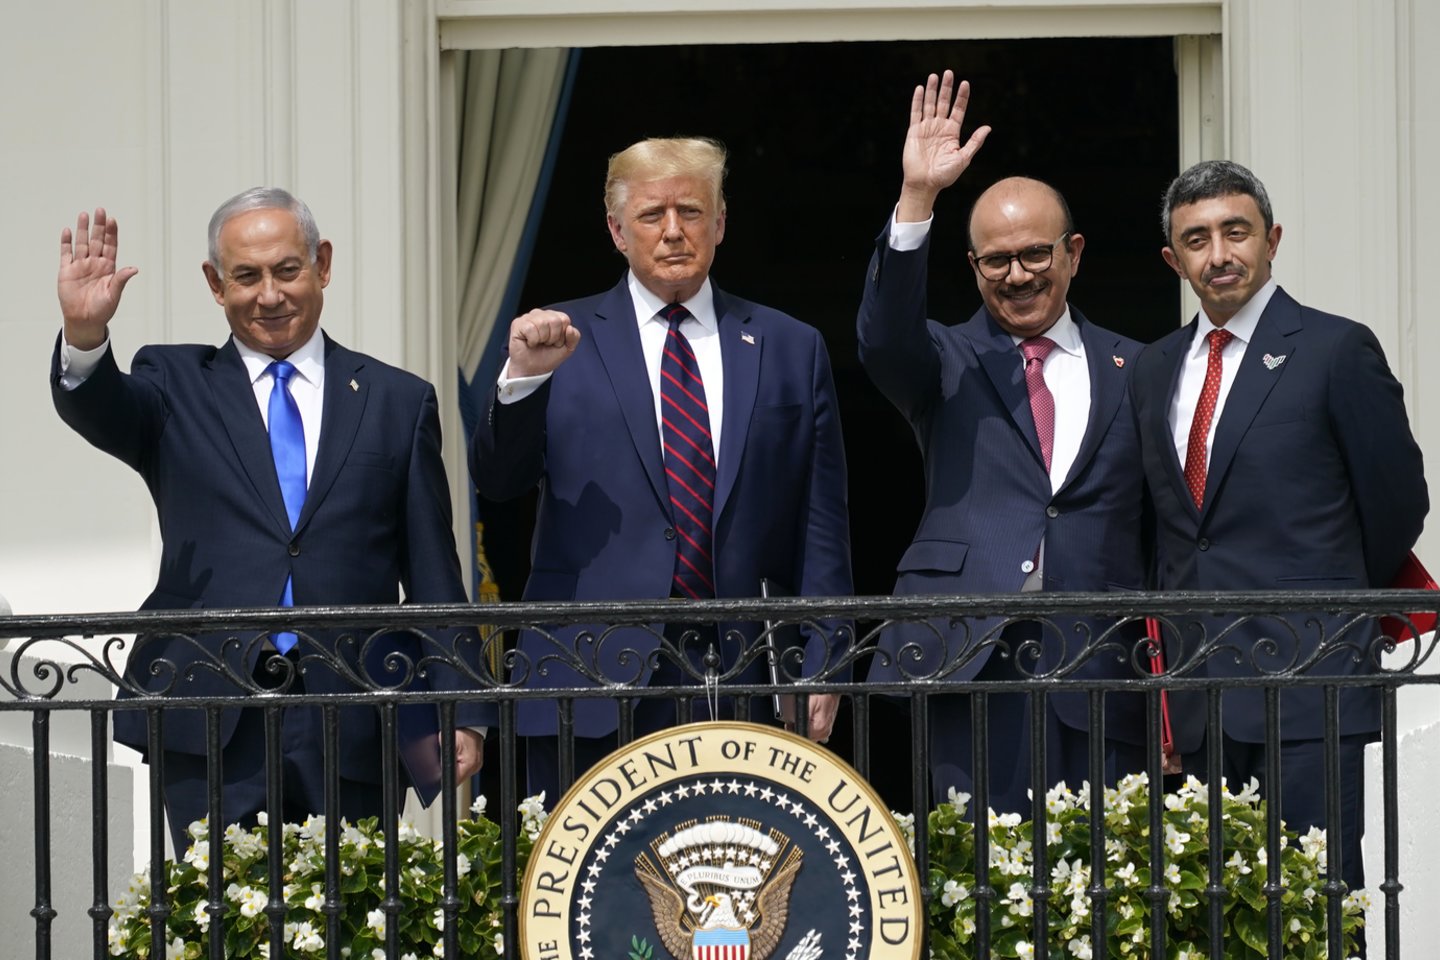  Vašingtone buvo pasirašyti istoriniai santykių normalizavimo susitarimai tarp Izraelio ir Jungtinių Arabų Emyratų bei Bahreino. Palestiniečiai tai palaikė išdavyste ir pradėjo deginti Izraelio vėliavas.<br> ZUMA Press/Scanpix nuotr.